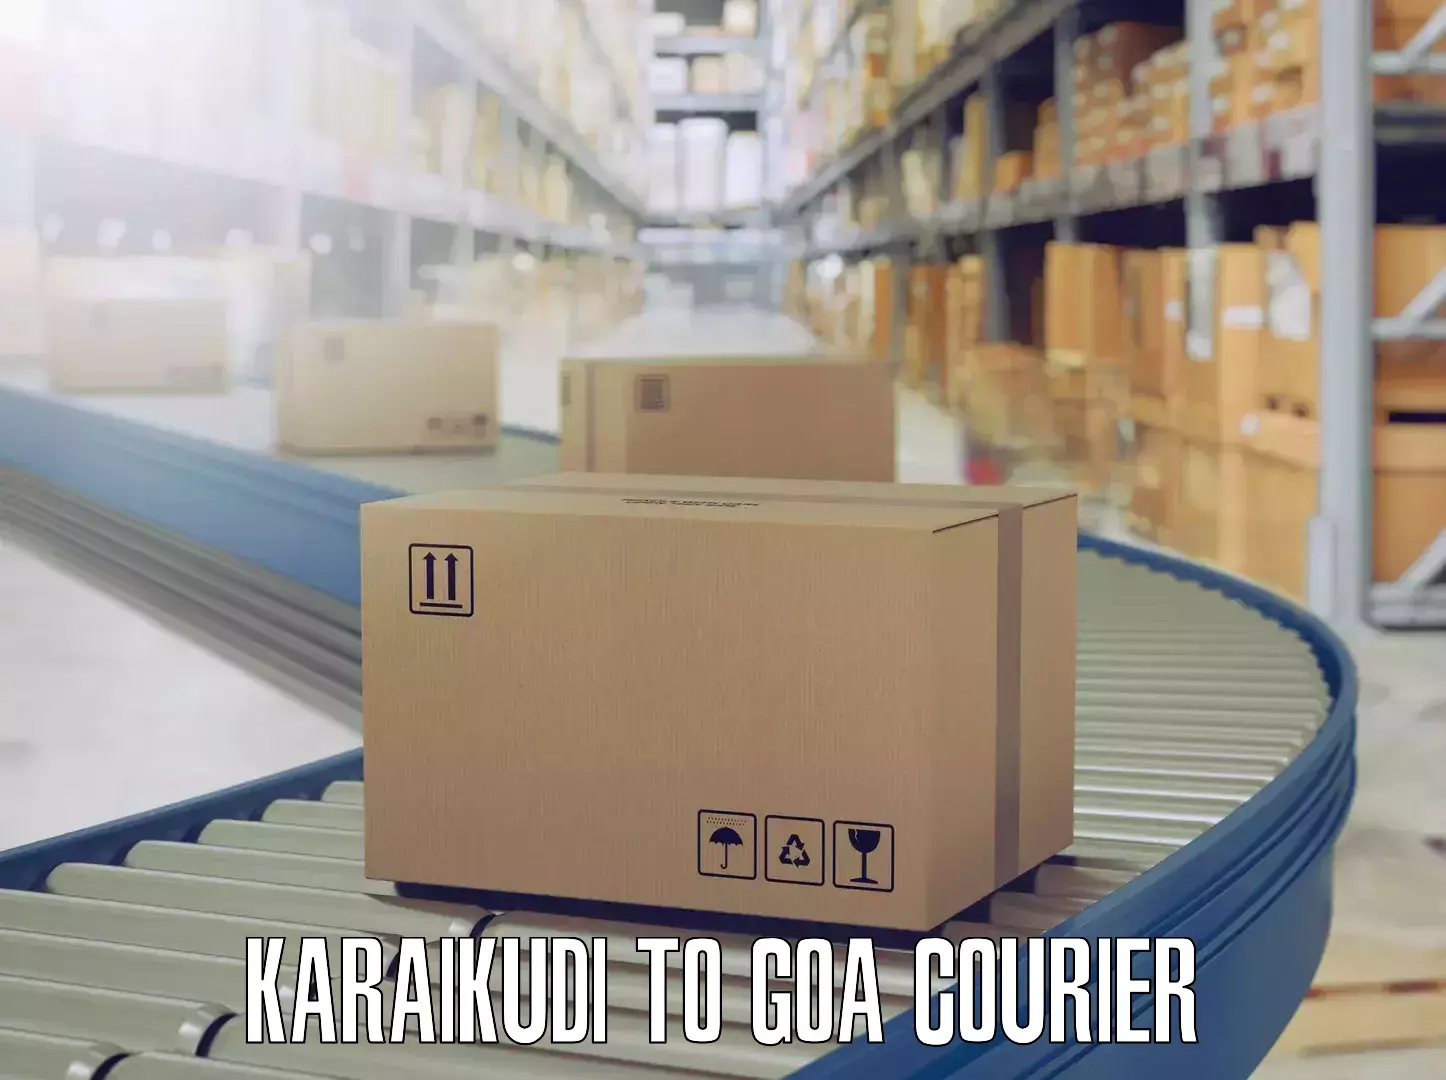 Reliable furniture movers Karaikudi to IIT Goa